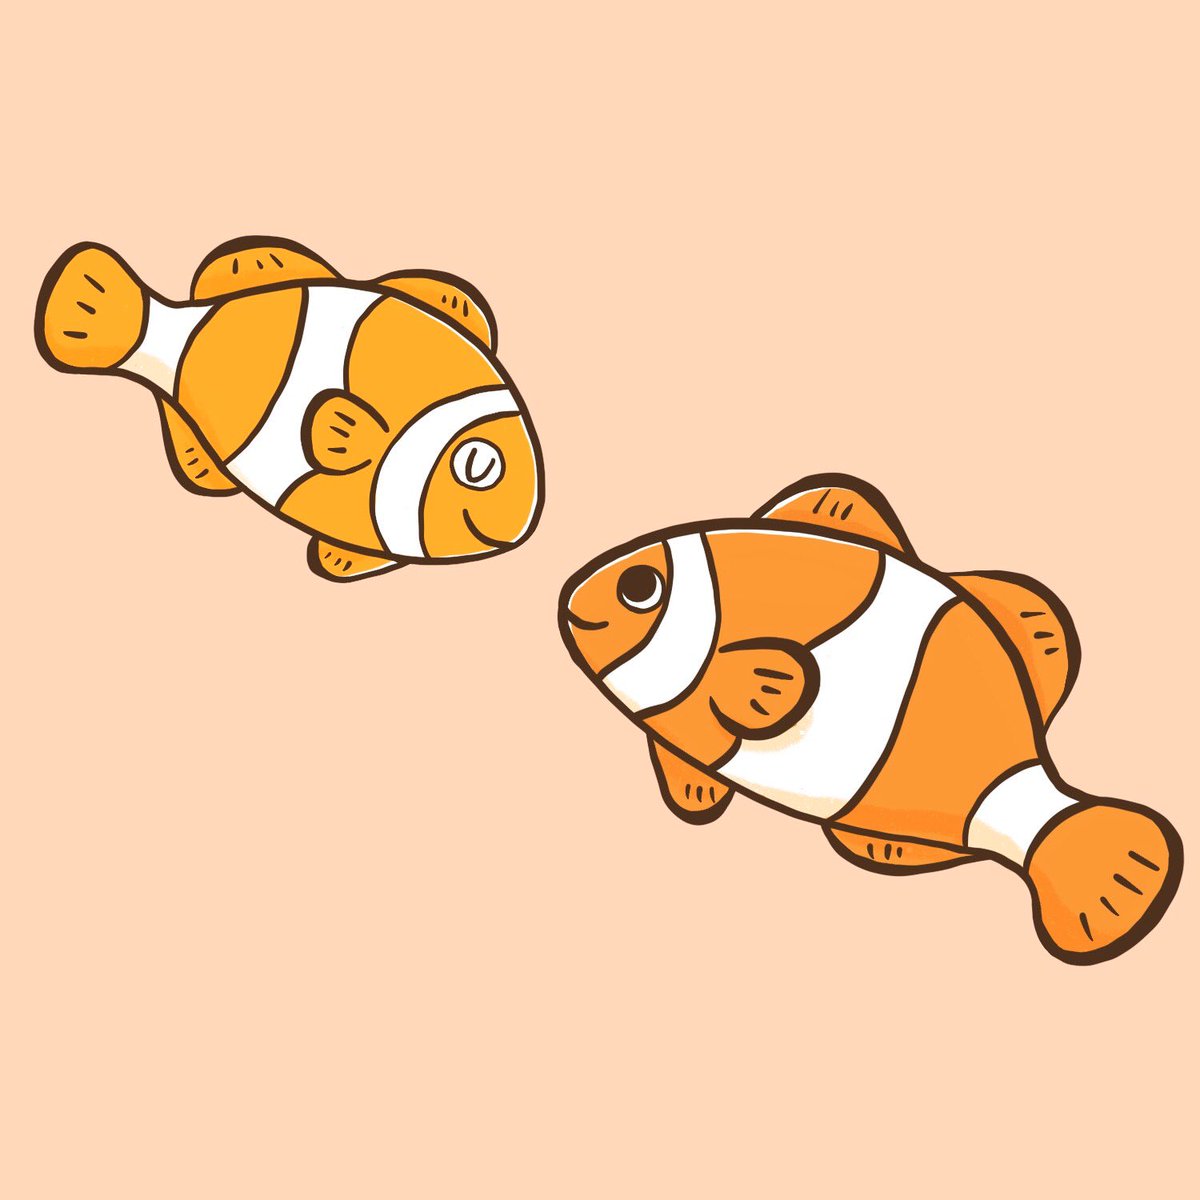 تويتر えびんぐ イラストレーター على تويتر カクレクマノミを描いてみました イラスト イラスト好きさんと繋がりたい カクレクマノミ 魚 海 海の生き物 Clownfish Anemonefish Illustration Procreate T Co Uq35kbxmsv